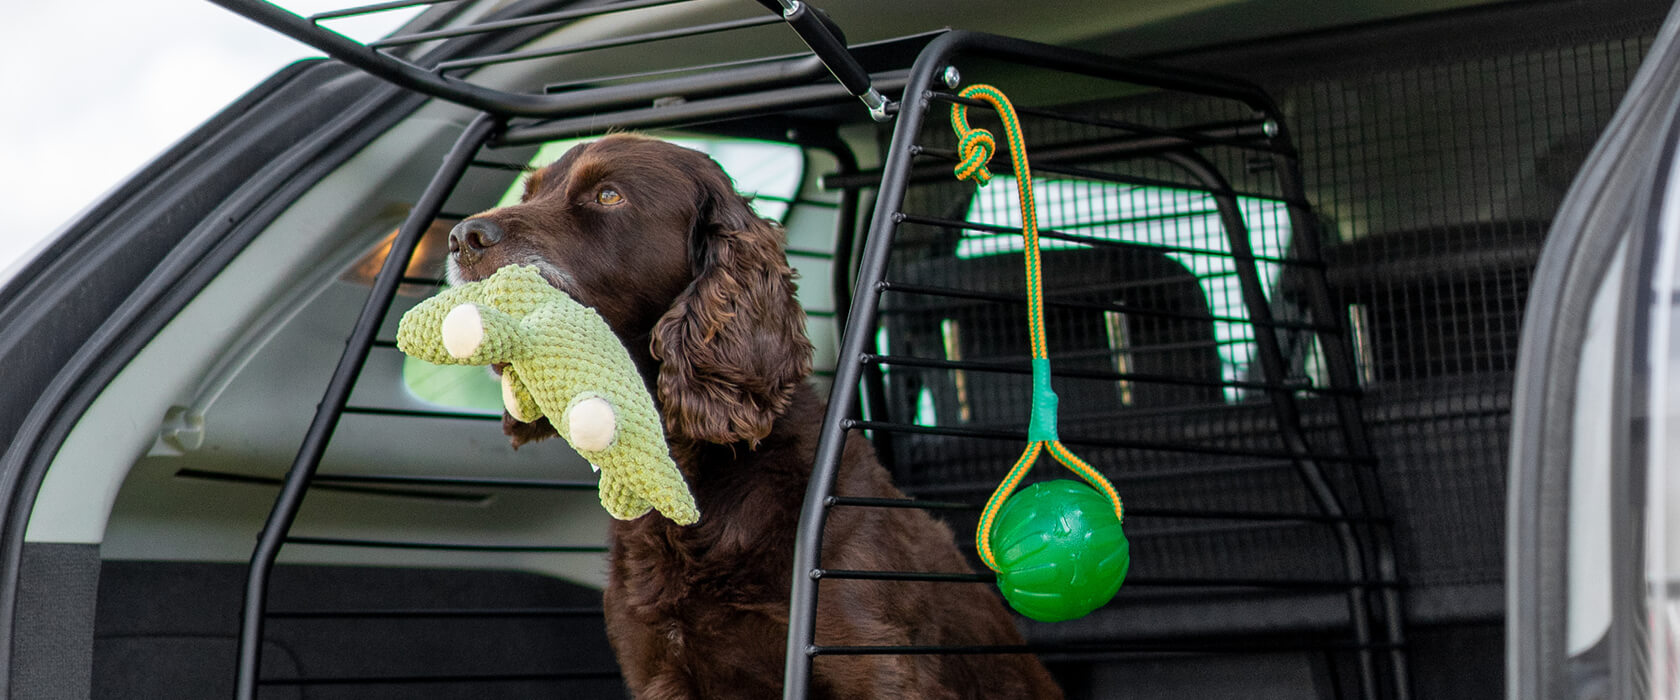 Avbildet: Hund med leke i munnen i et Flexxy hundebur